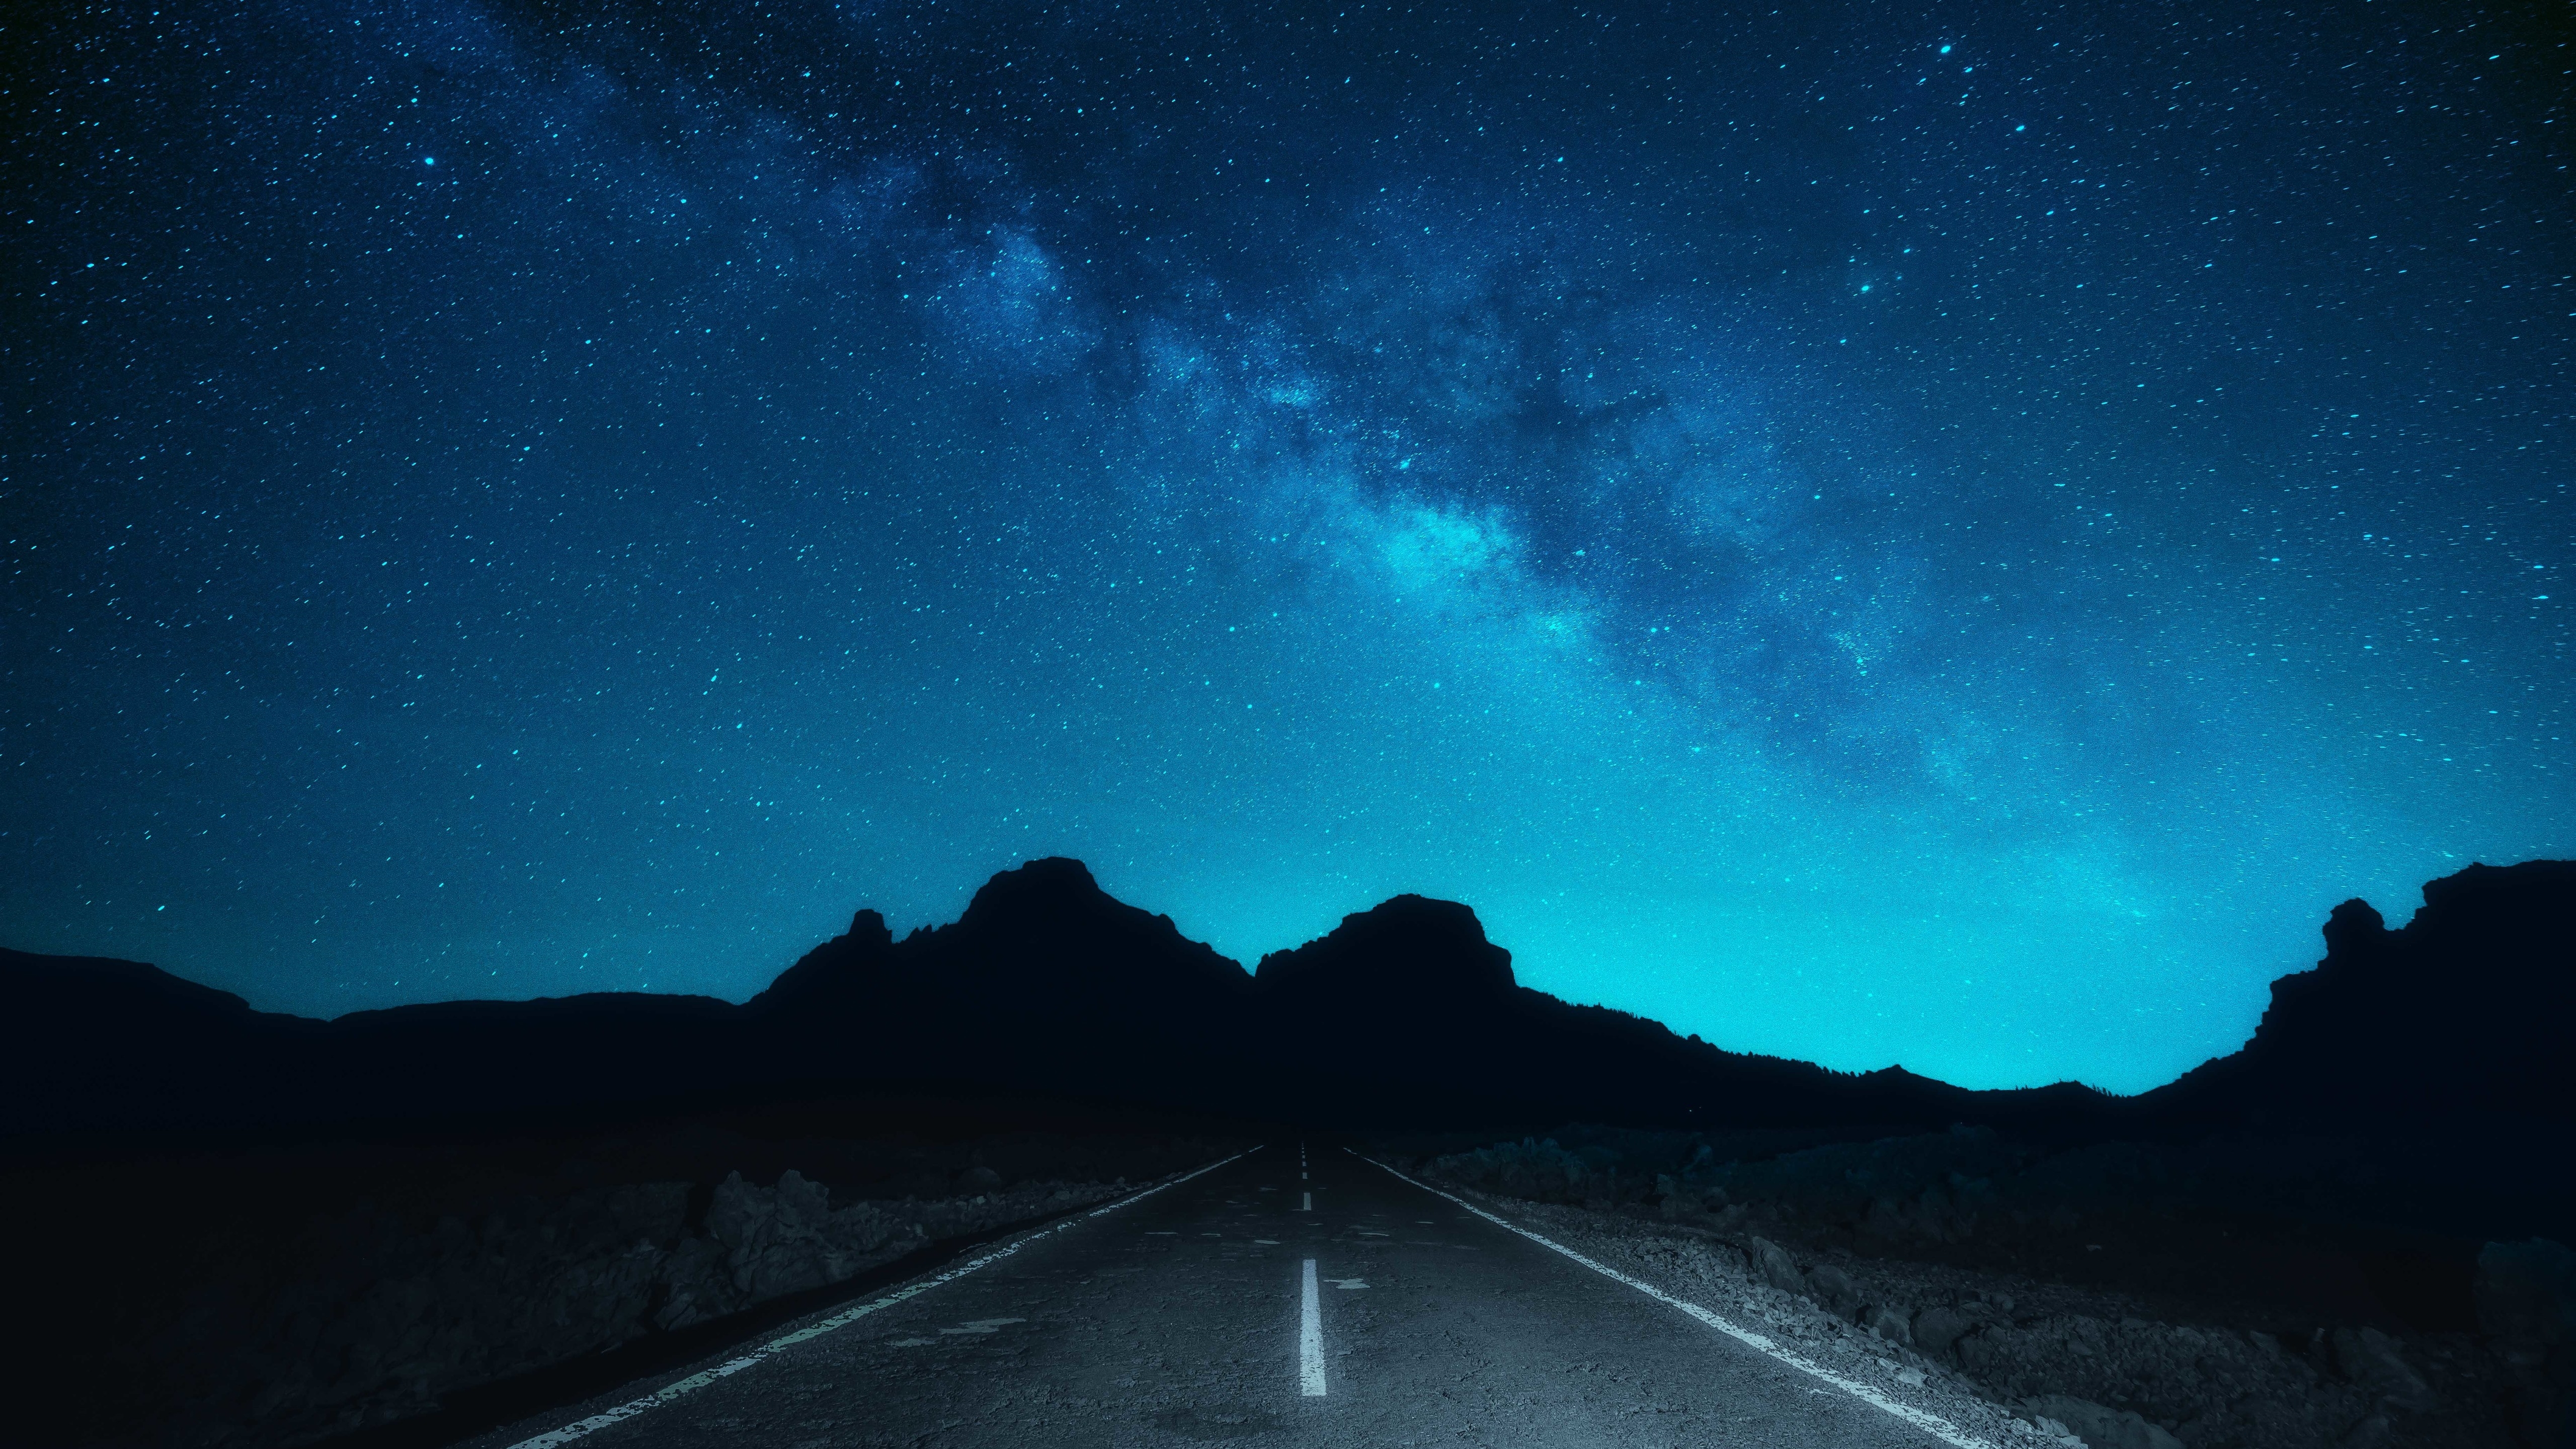 Ночное небо в звездах с хорошо видным млечным путем · бесплатная фотография